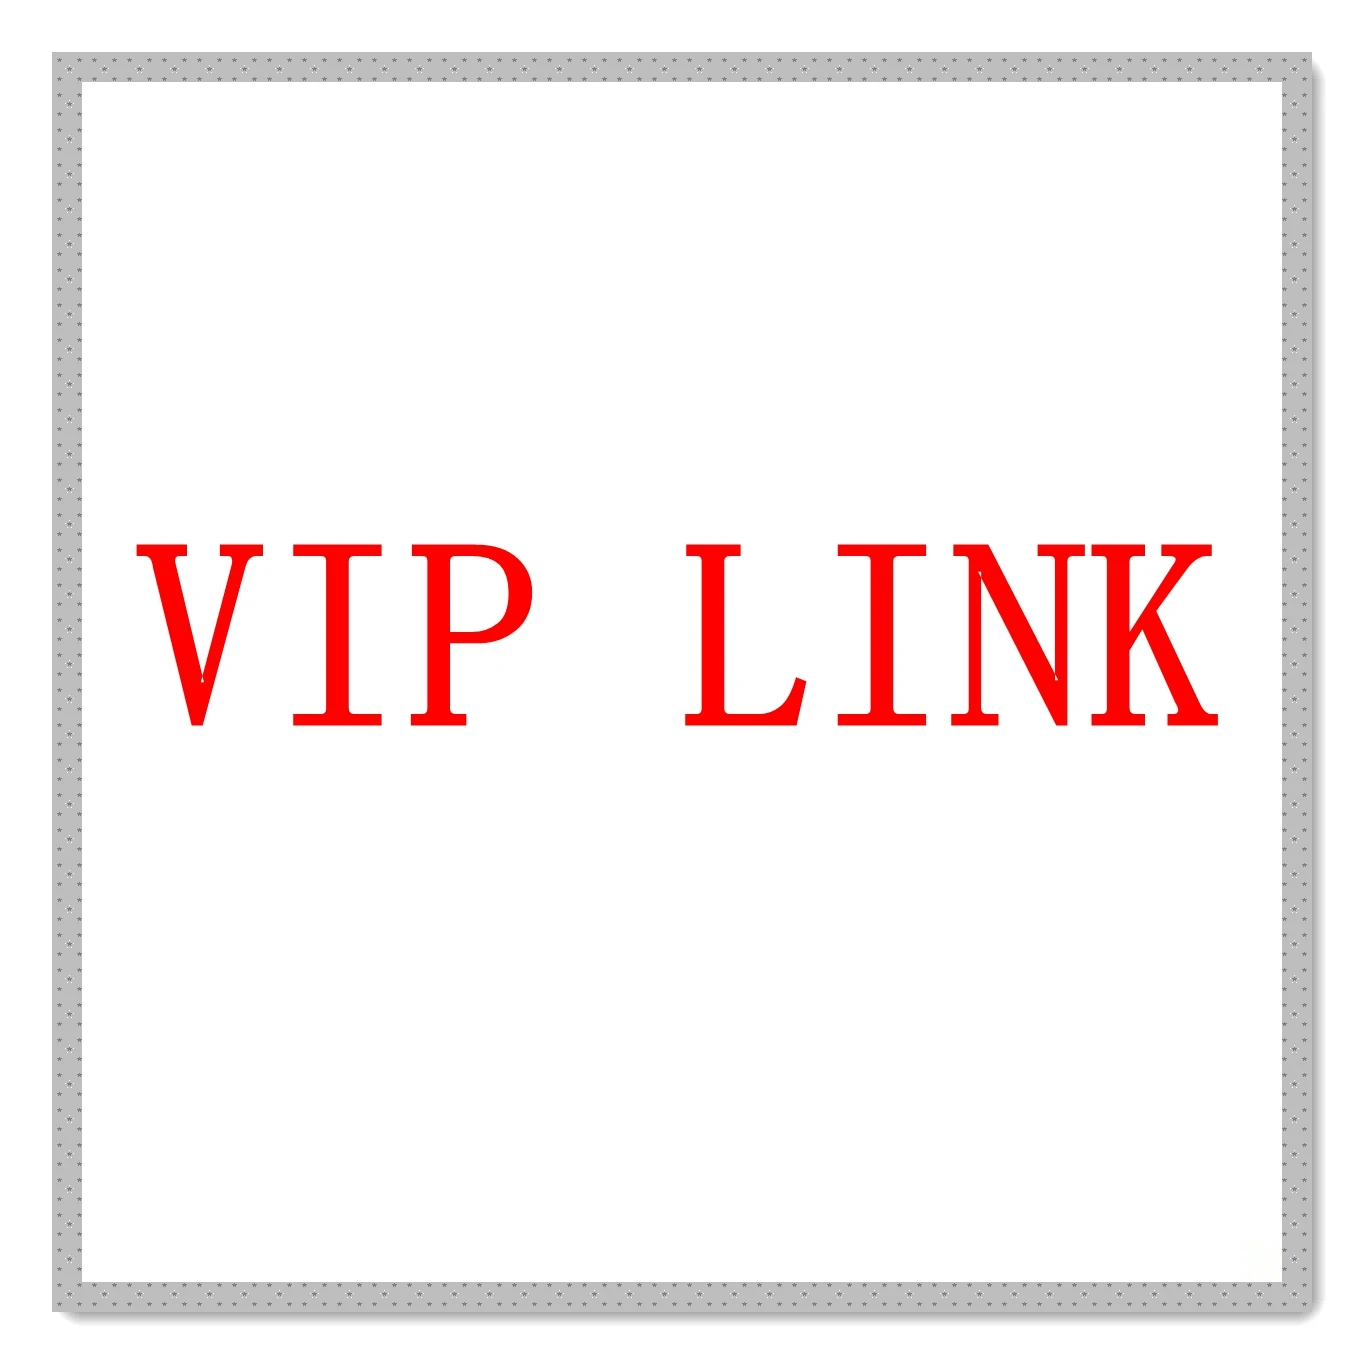 VIP LINK (купить могут только клиенты, с которыми свяжется продавец)